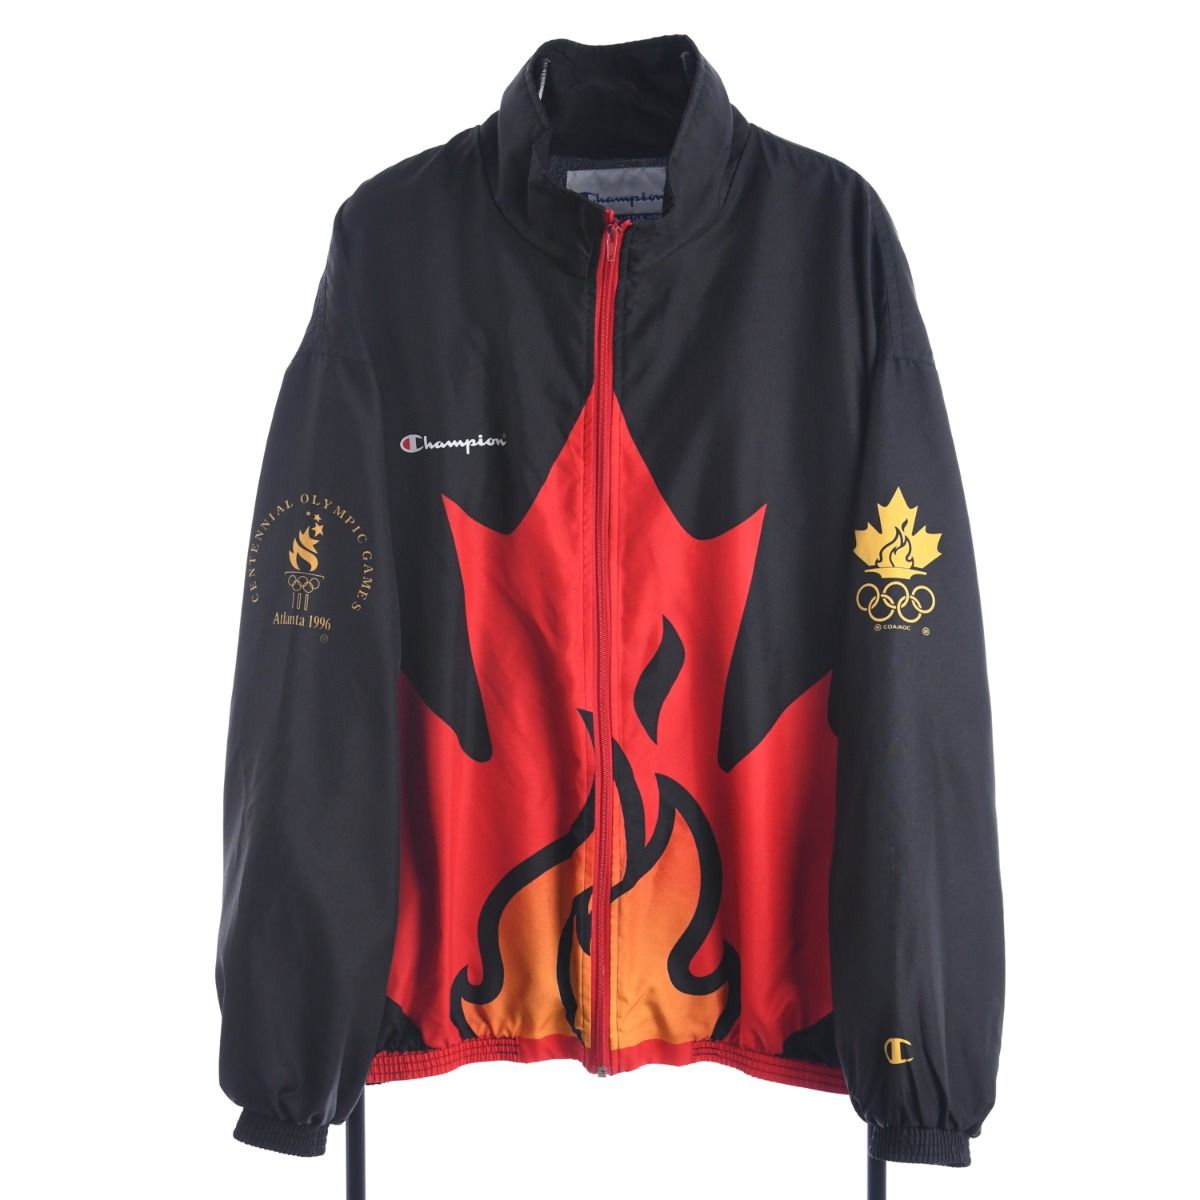 Champion X Canada 1996 Atlanta Olympics Jacket